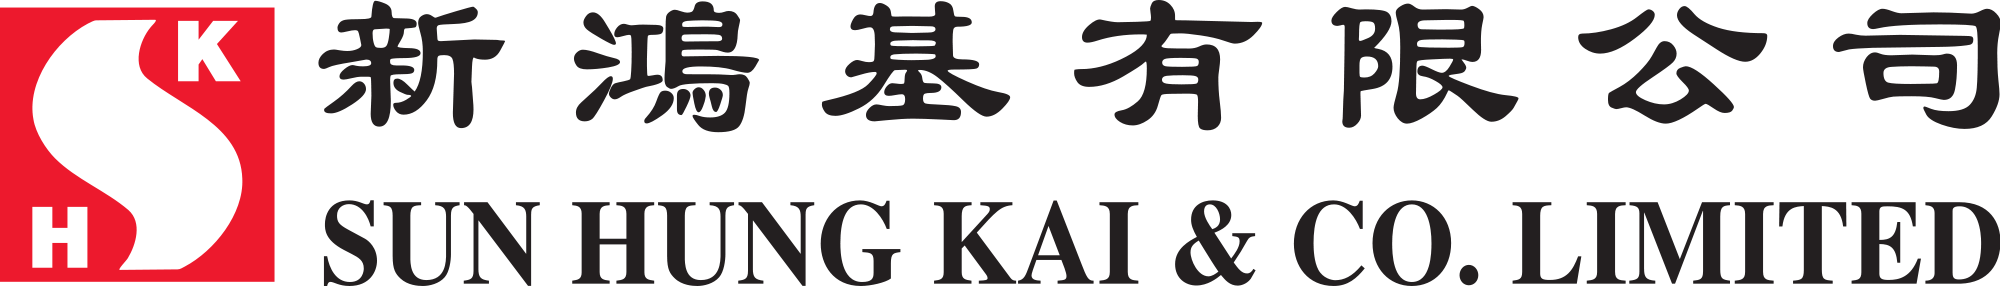 Sun Hung Kai Brand Logo